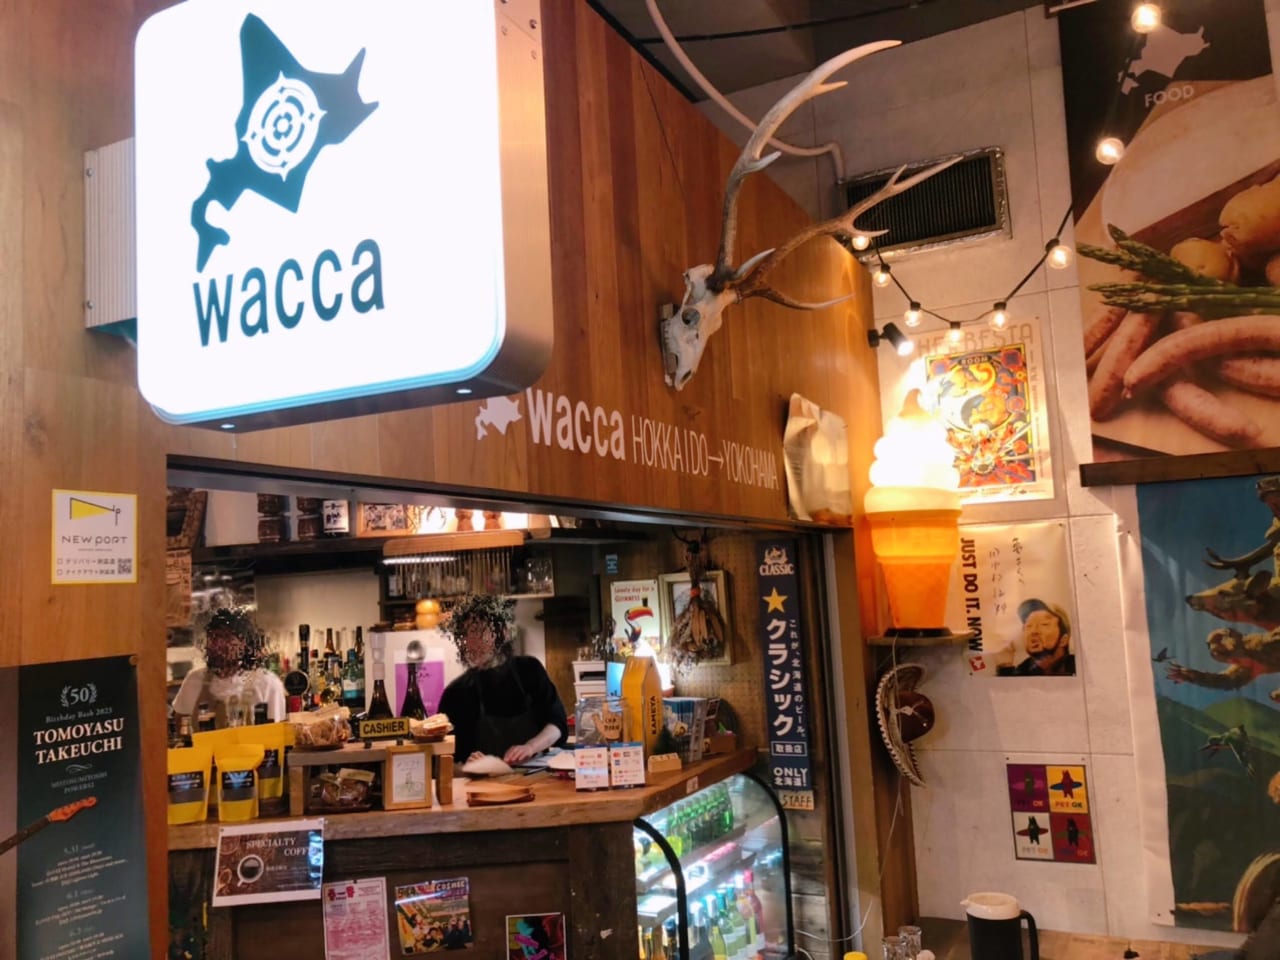 wacca from hokkaido